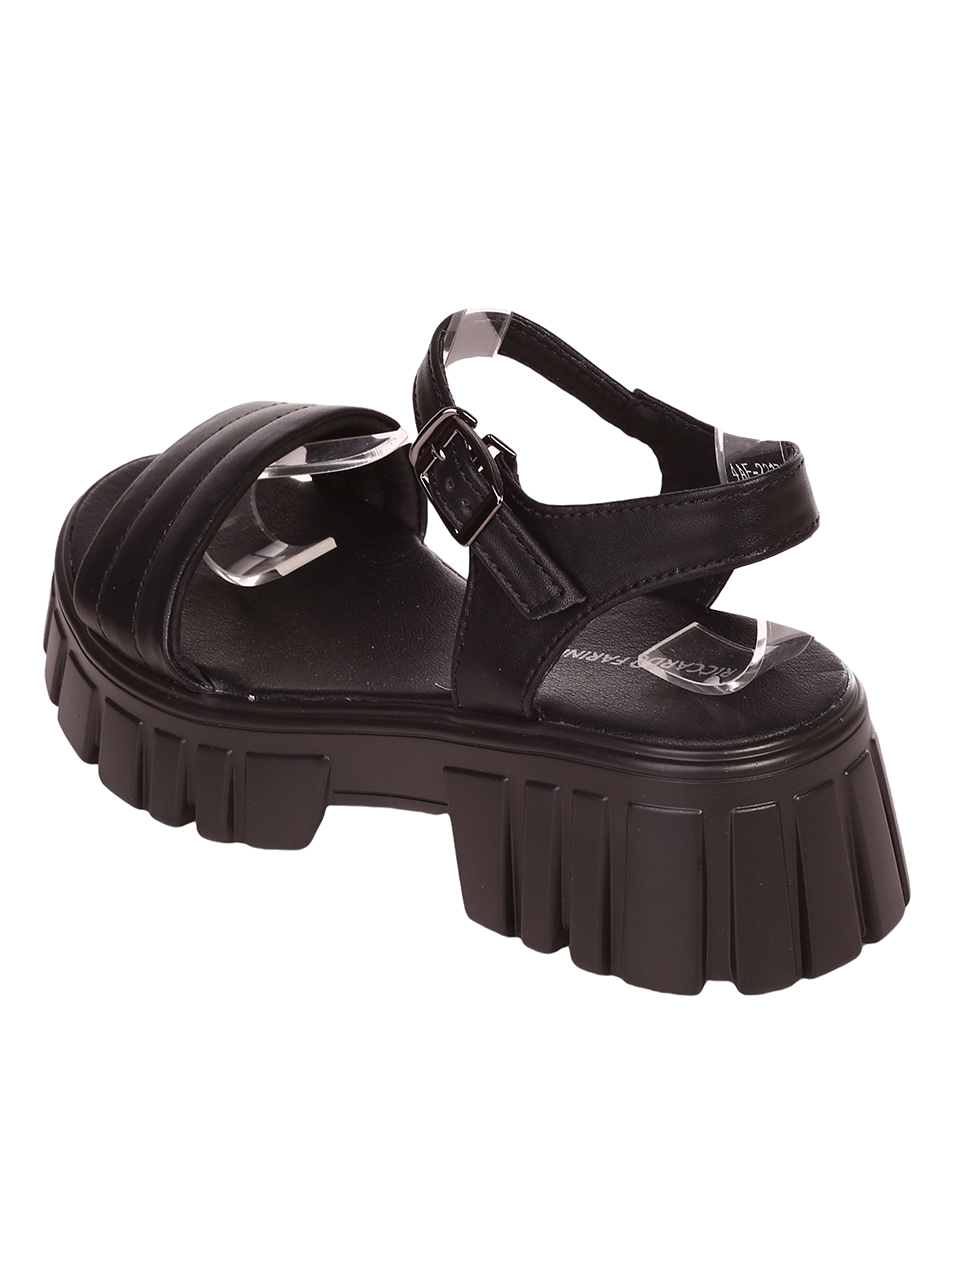 Ежедневни дамски сандали на платформа от естествена кожа 4AF-23171 black